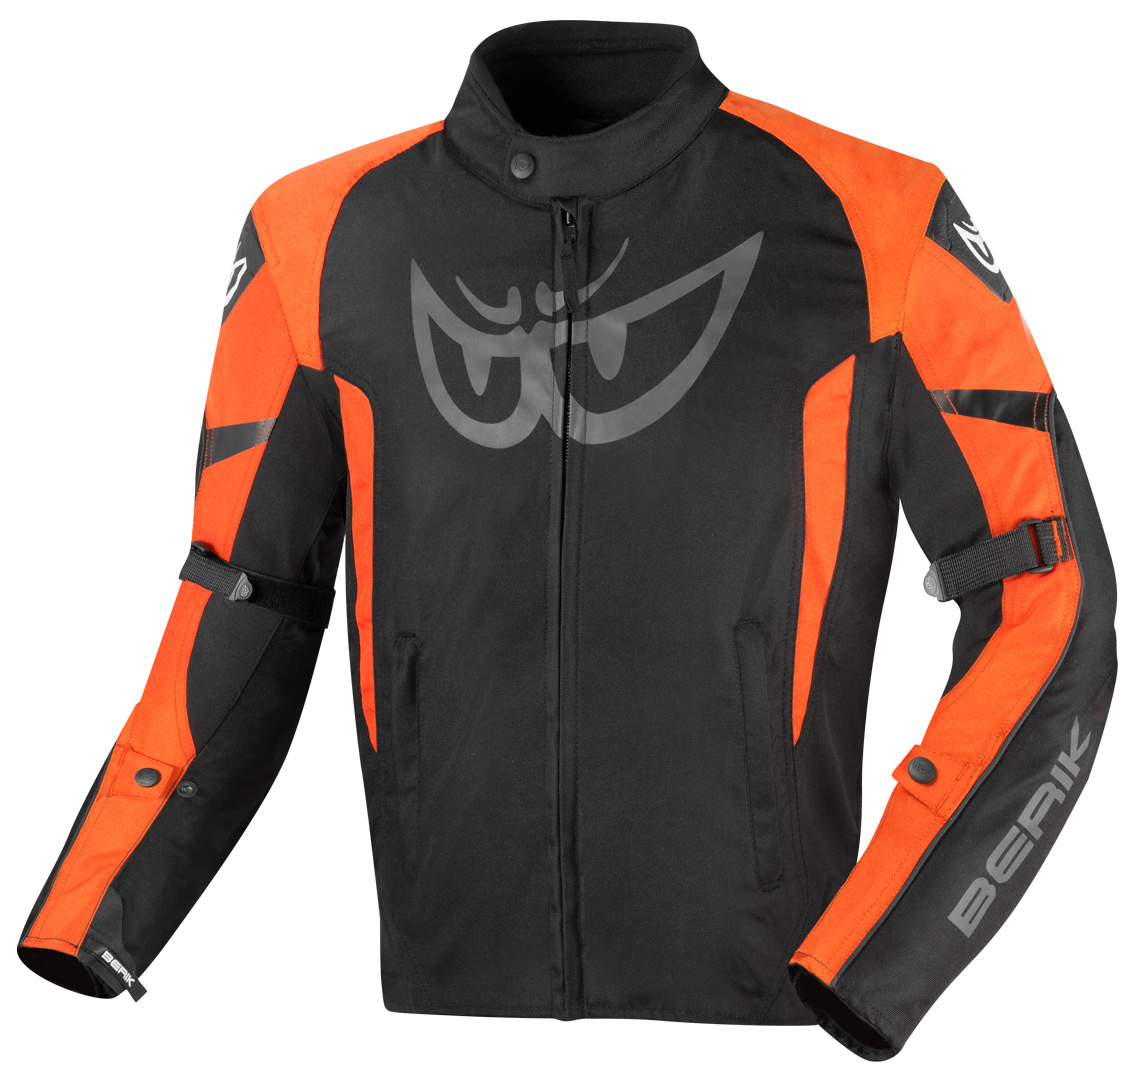 Мотоциклетная текстильная куртка Berik Tourer Evo водонепроницаемая, черный/оранжевый куртка размер 44 оранжевый черный